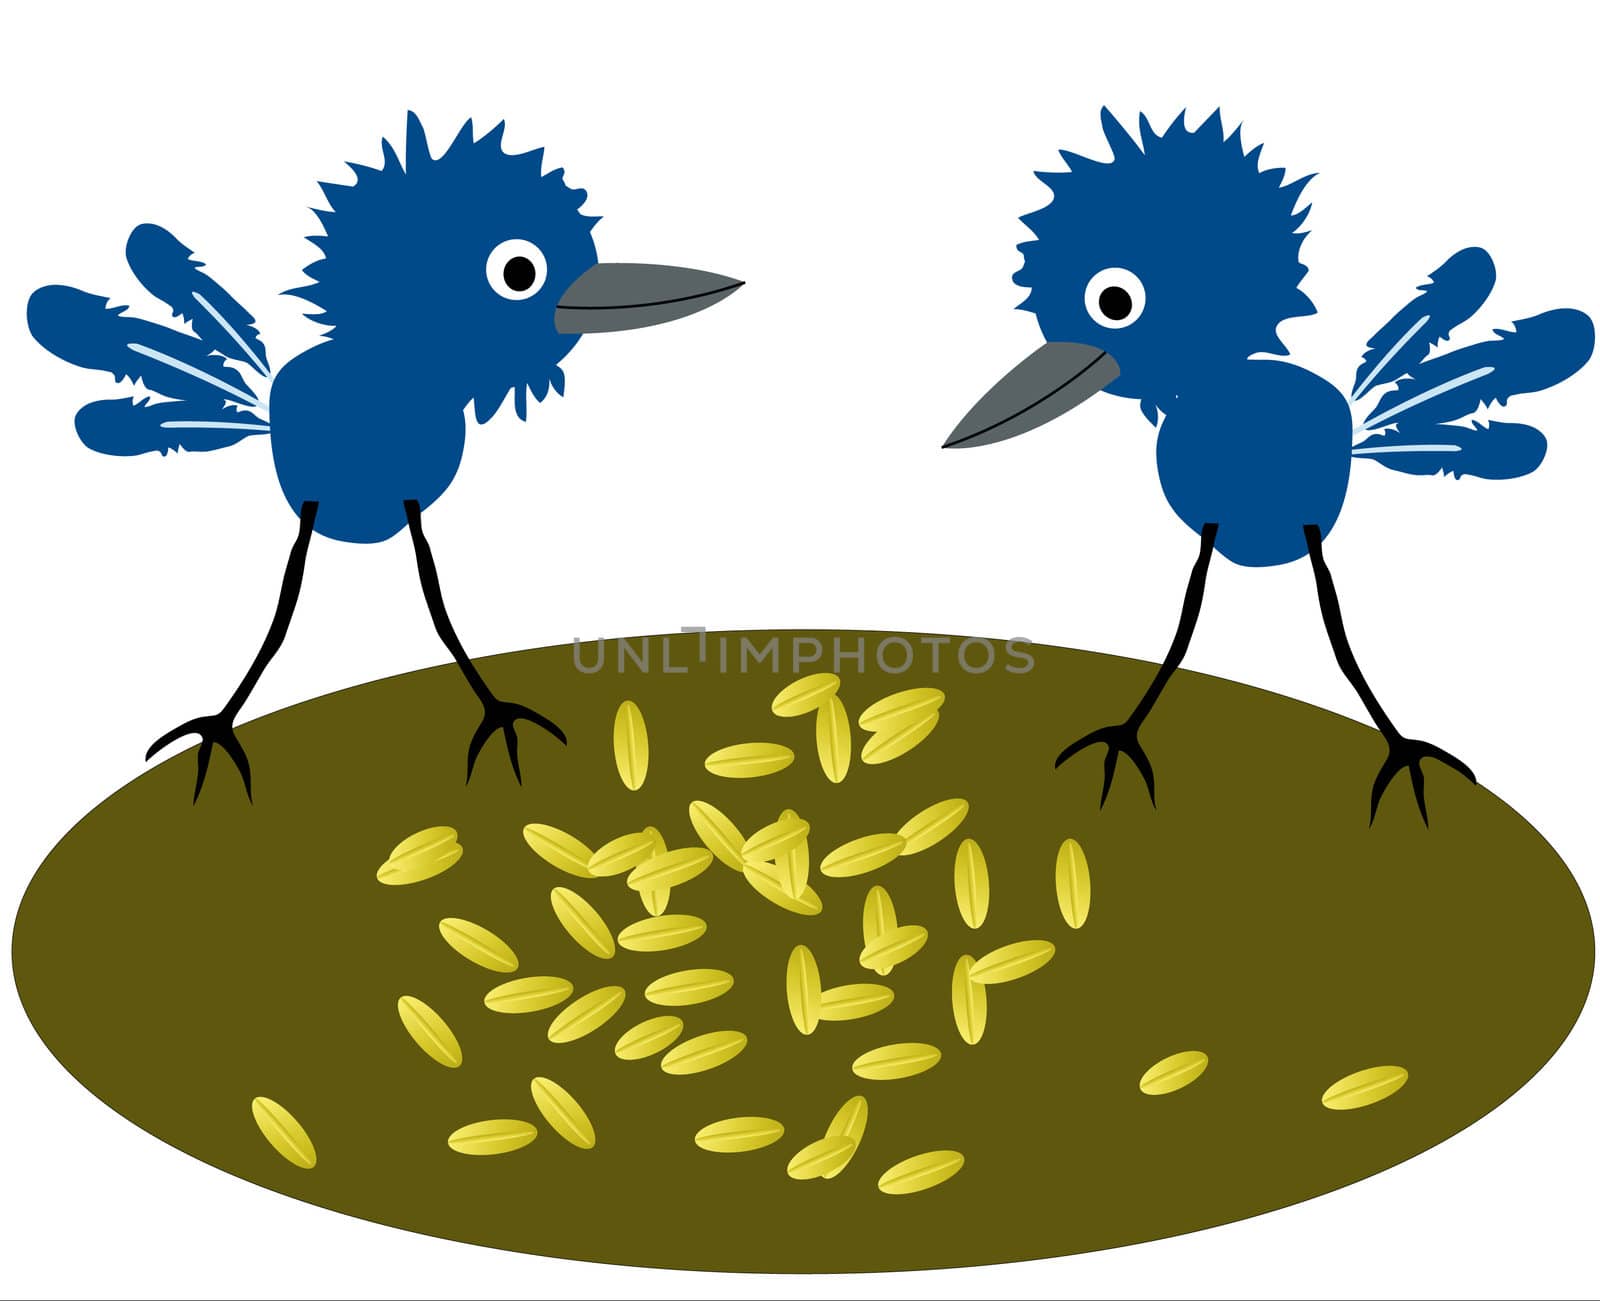 Birdies pecking grain by cobol1964